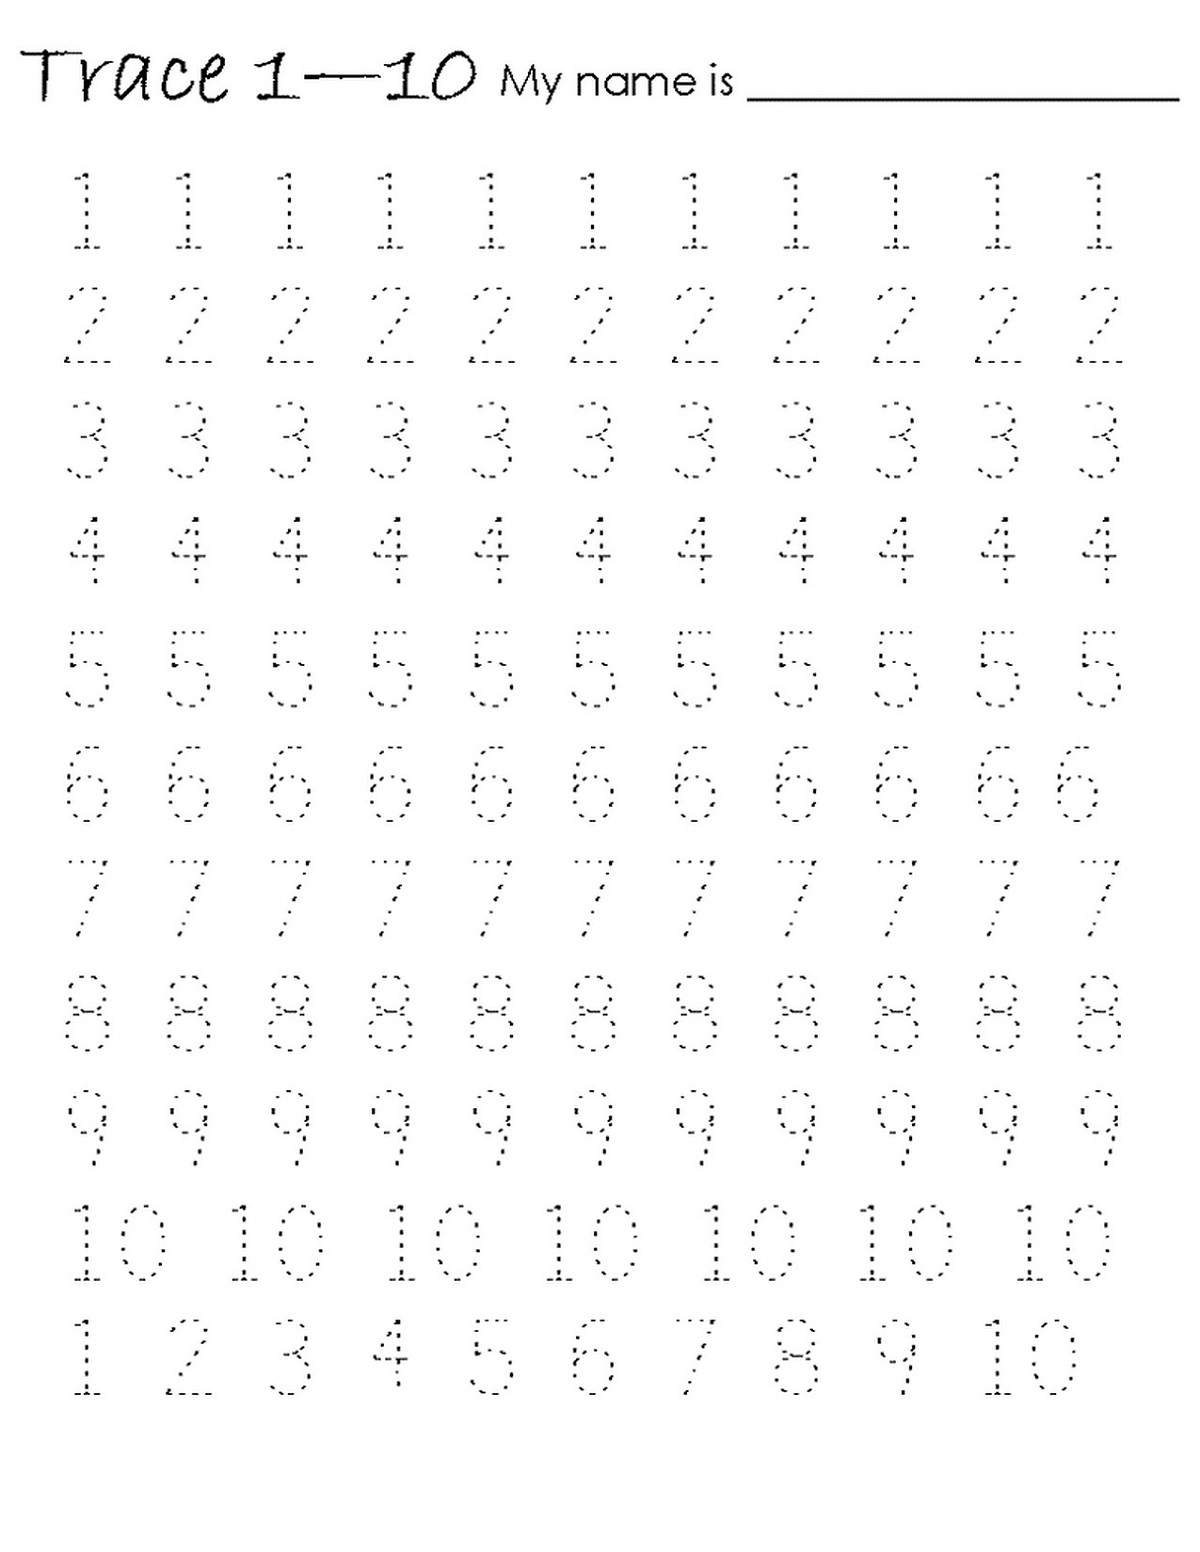 worksheet writing numbers